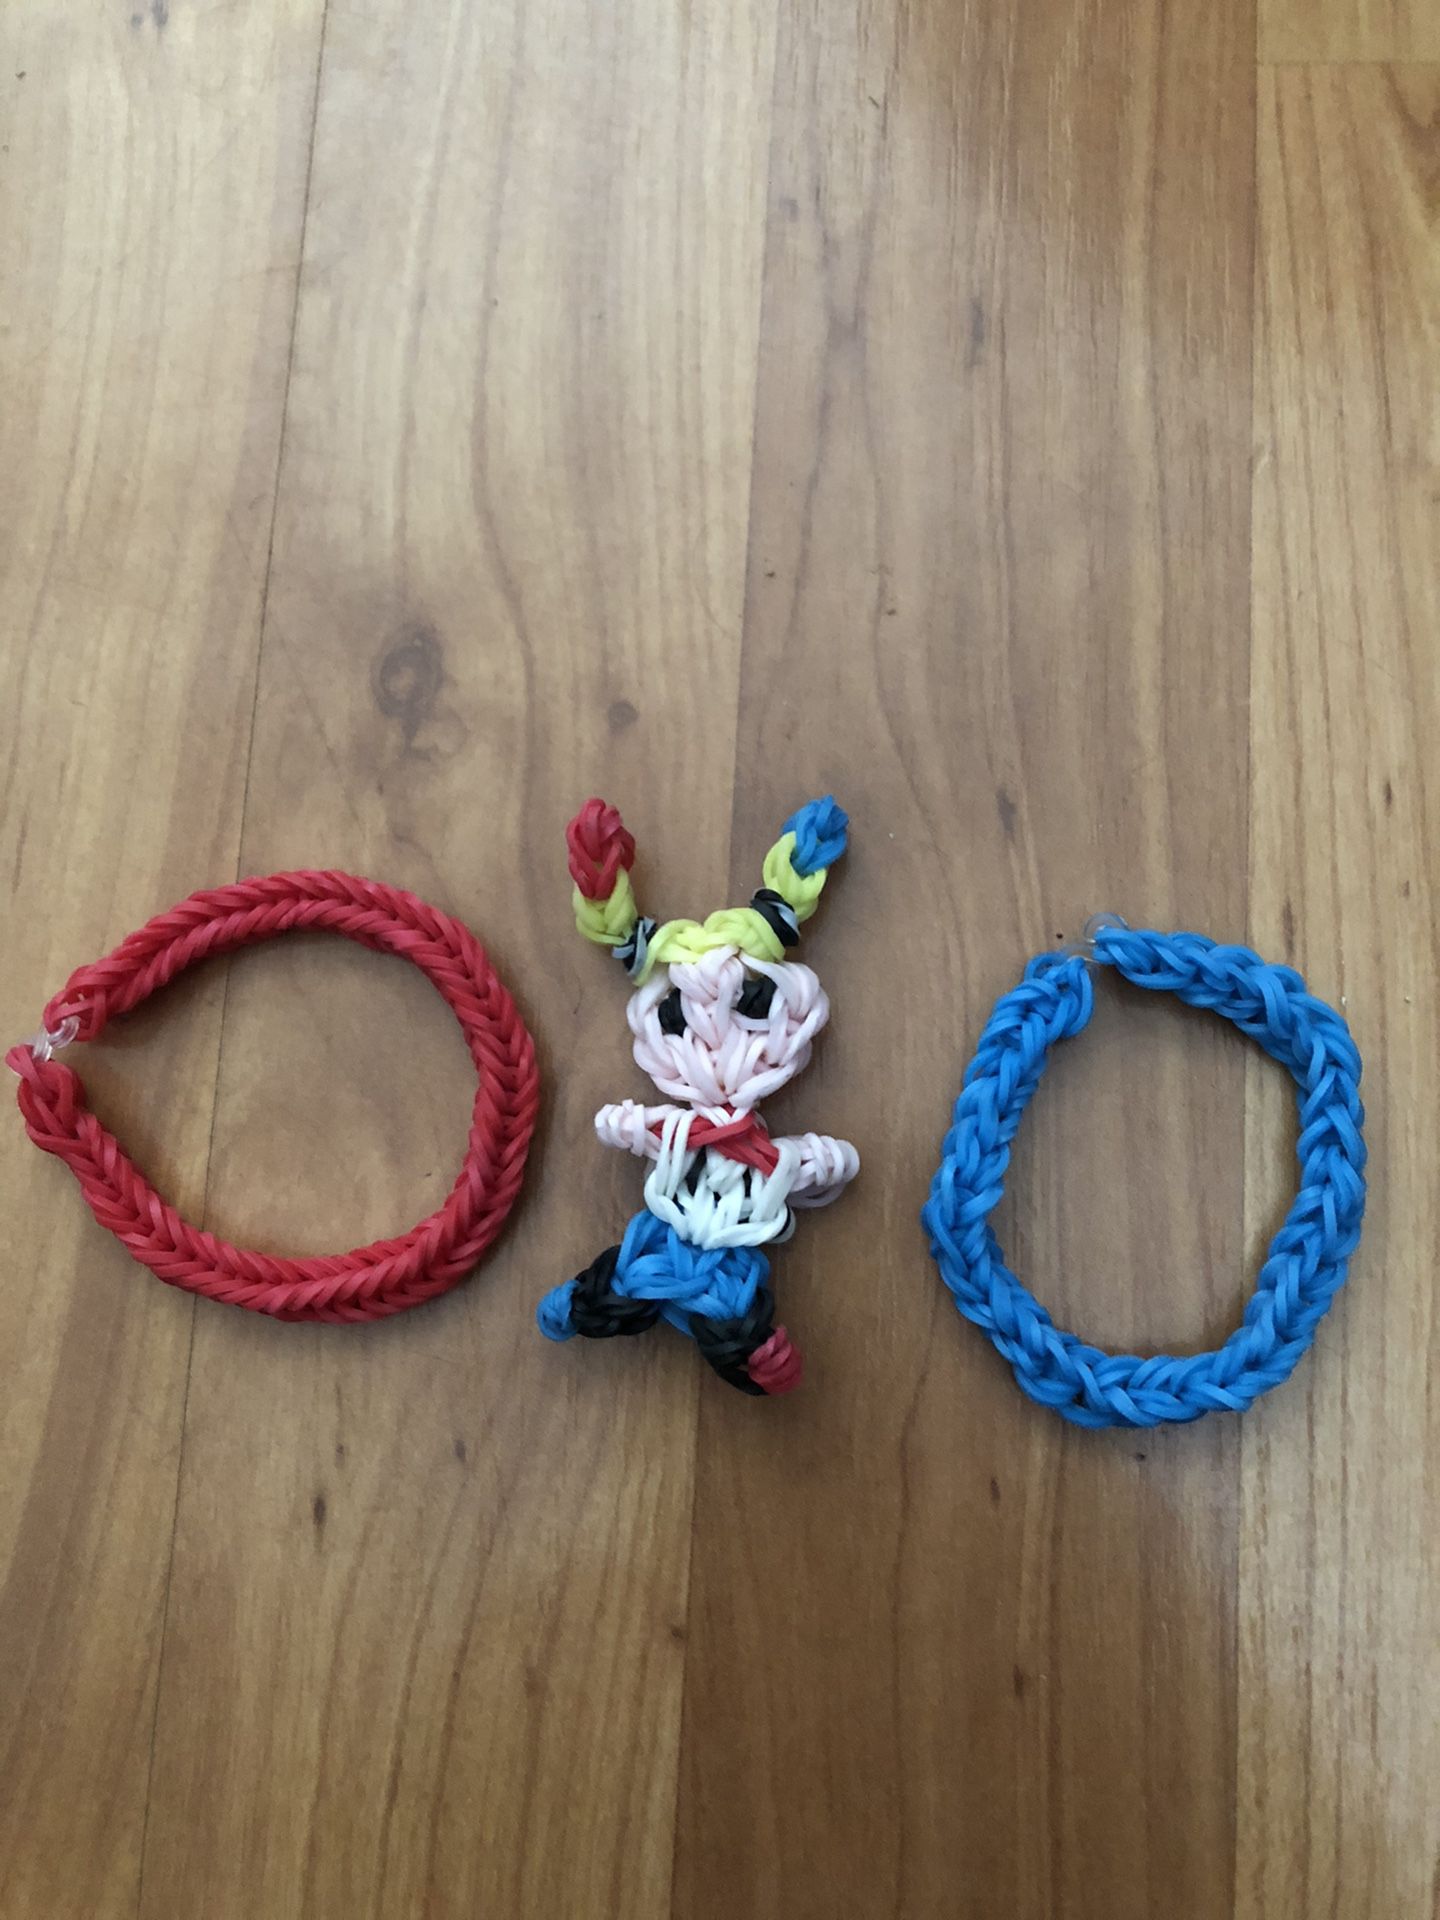 Harley Quinn Rainbow Loom with bracelets